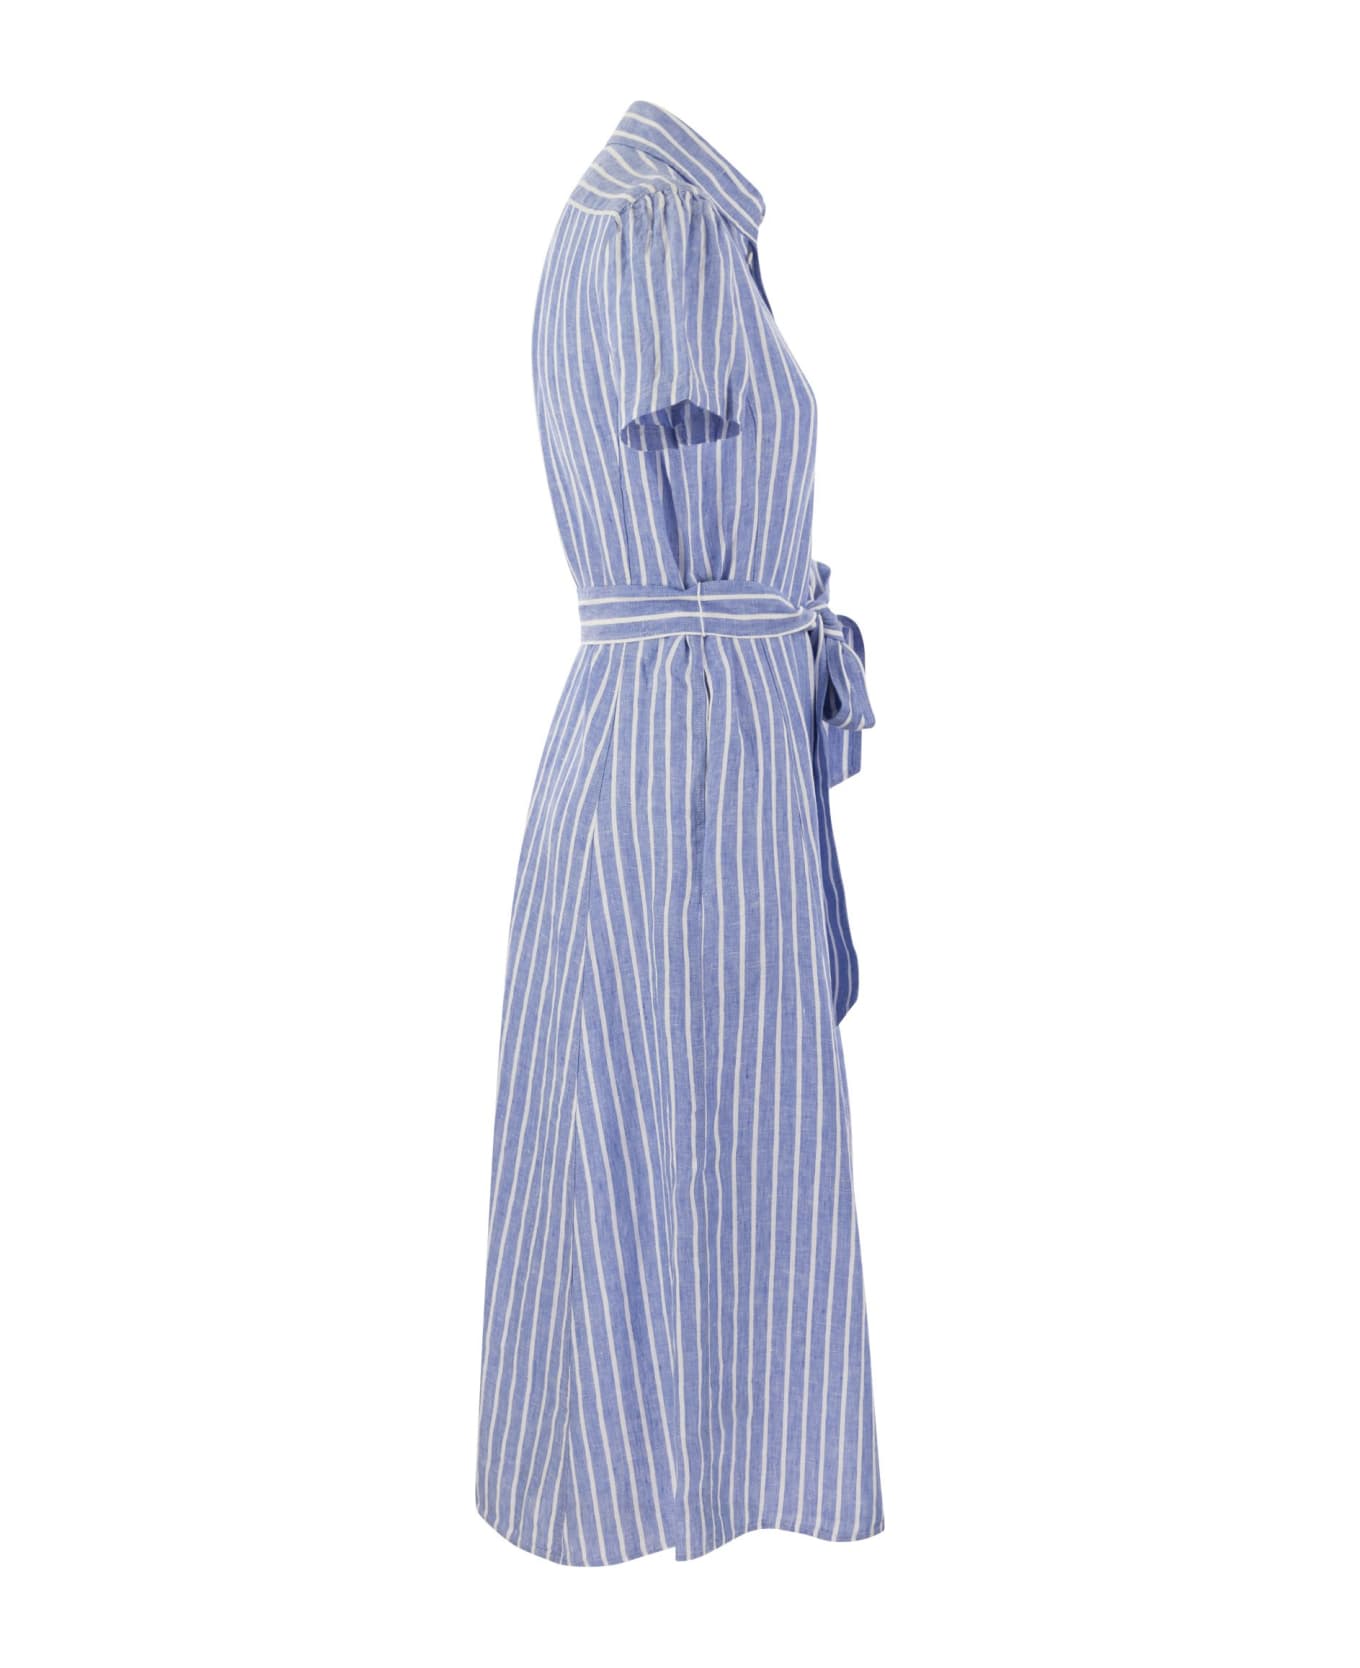 Polo Ralph Lauren Striped Linen Chemisier - Light Blue